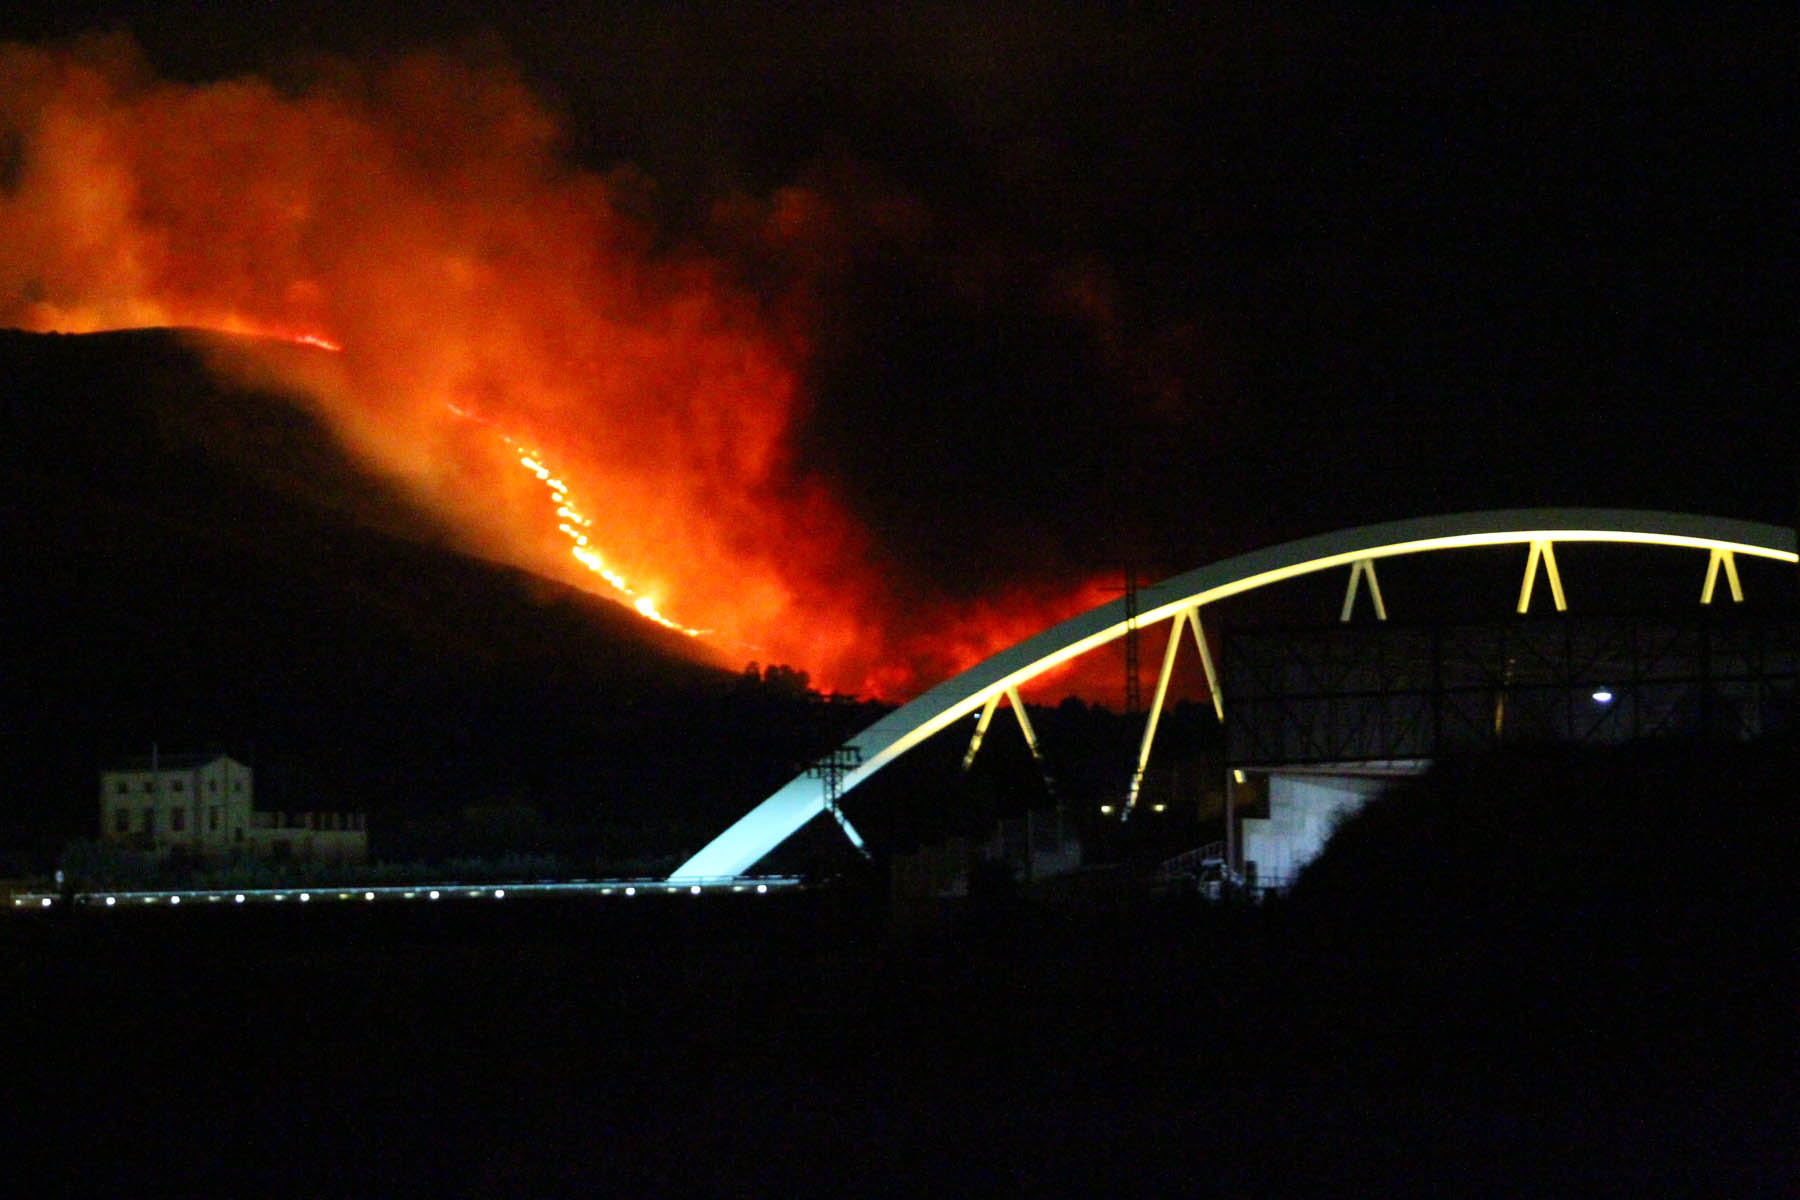 Es compleixen 11 anys del gran incendi que va afectar la comarca El Periòdic d'Ontinyent - Noticies a Ontinyent